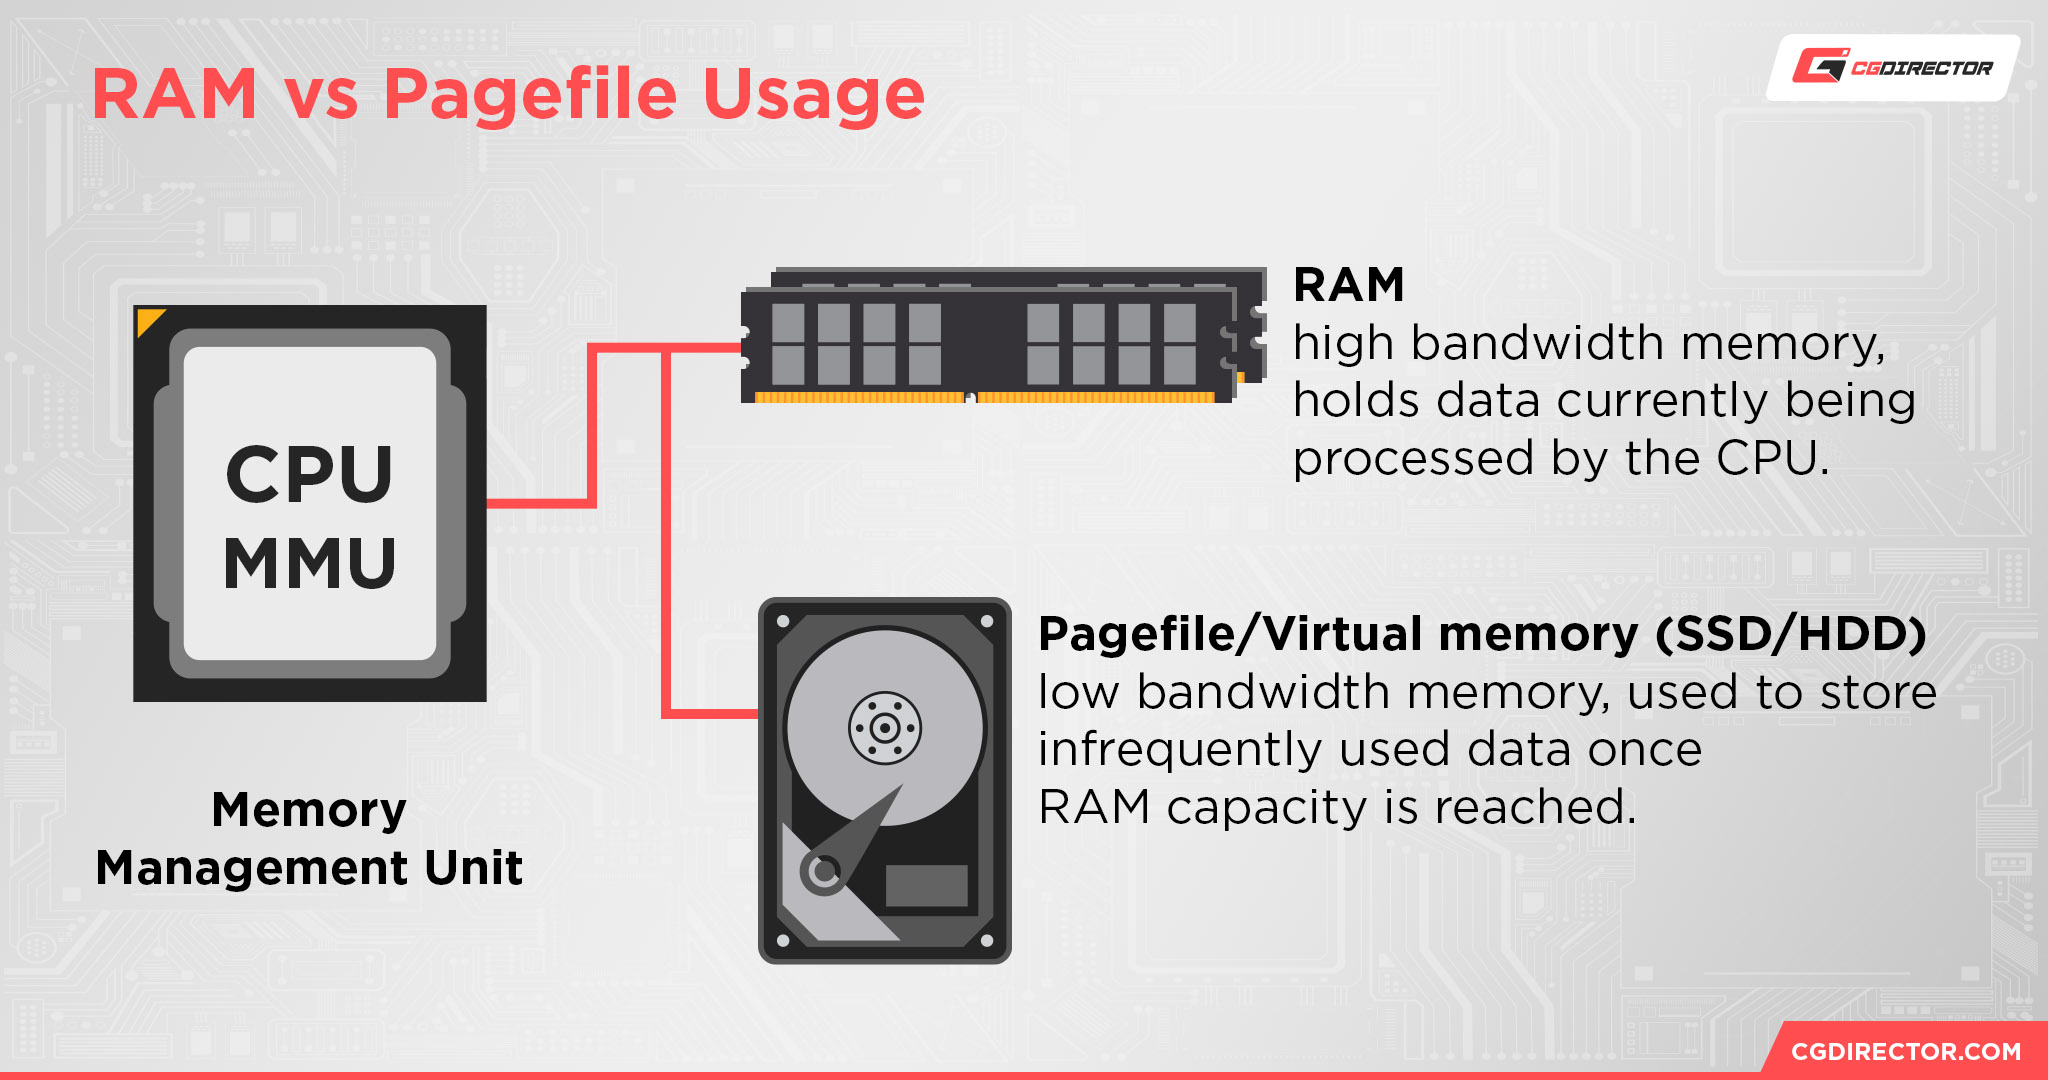 RAM vs Pagefile virtual memory usage